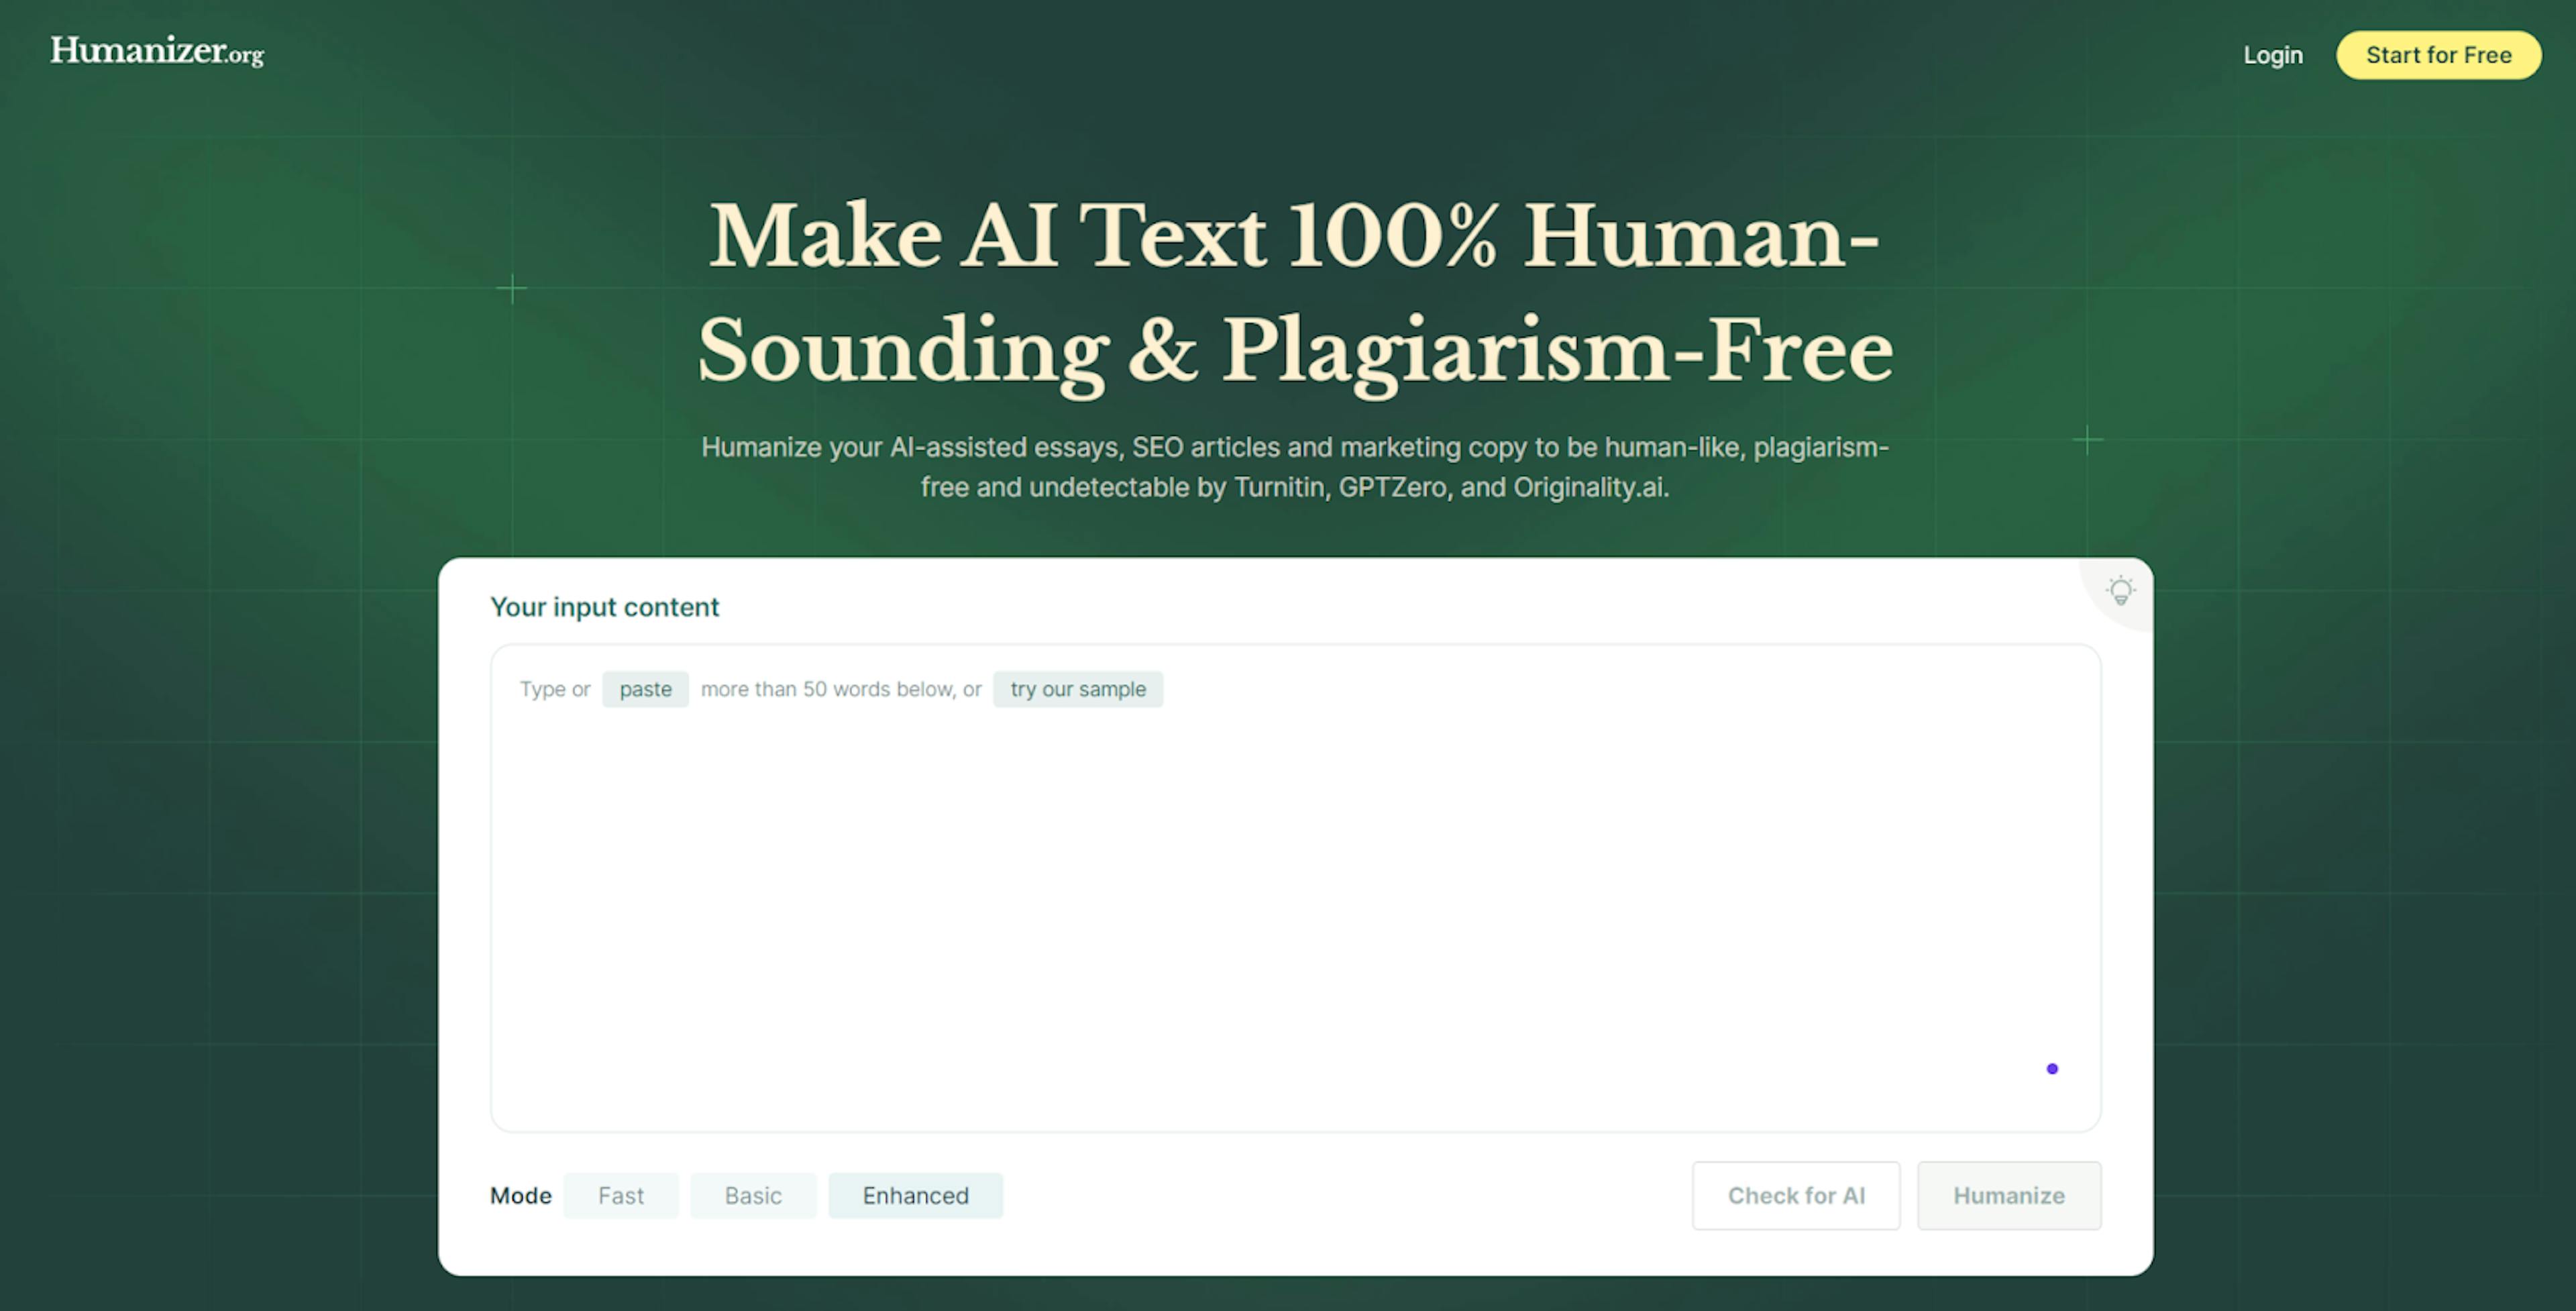 featured image - Humanizer.org 评论：免费让 AI 内容无法被检测到